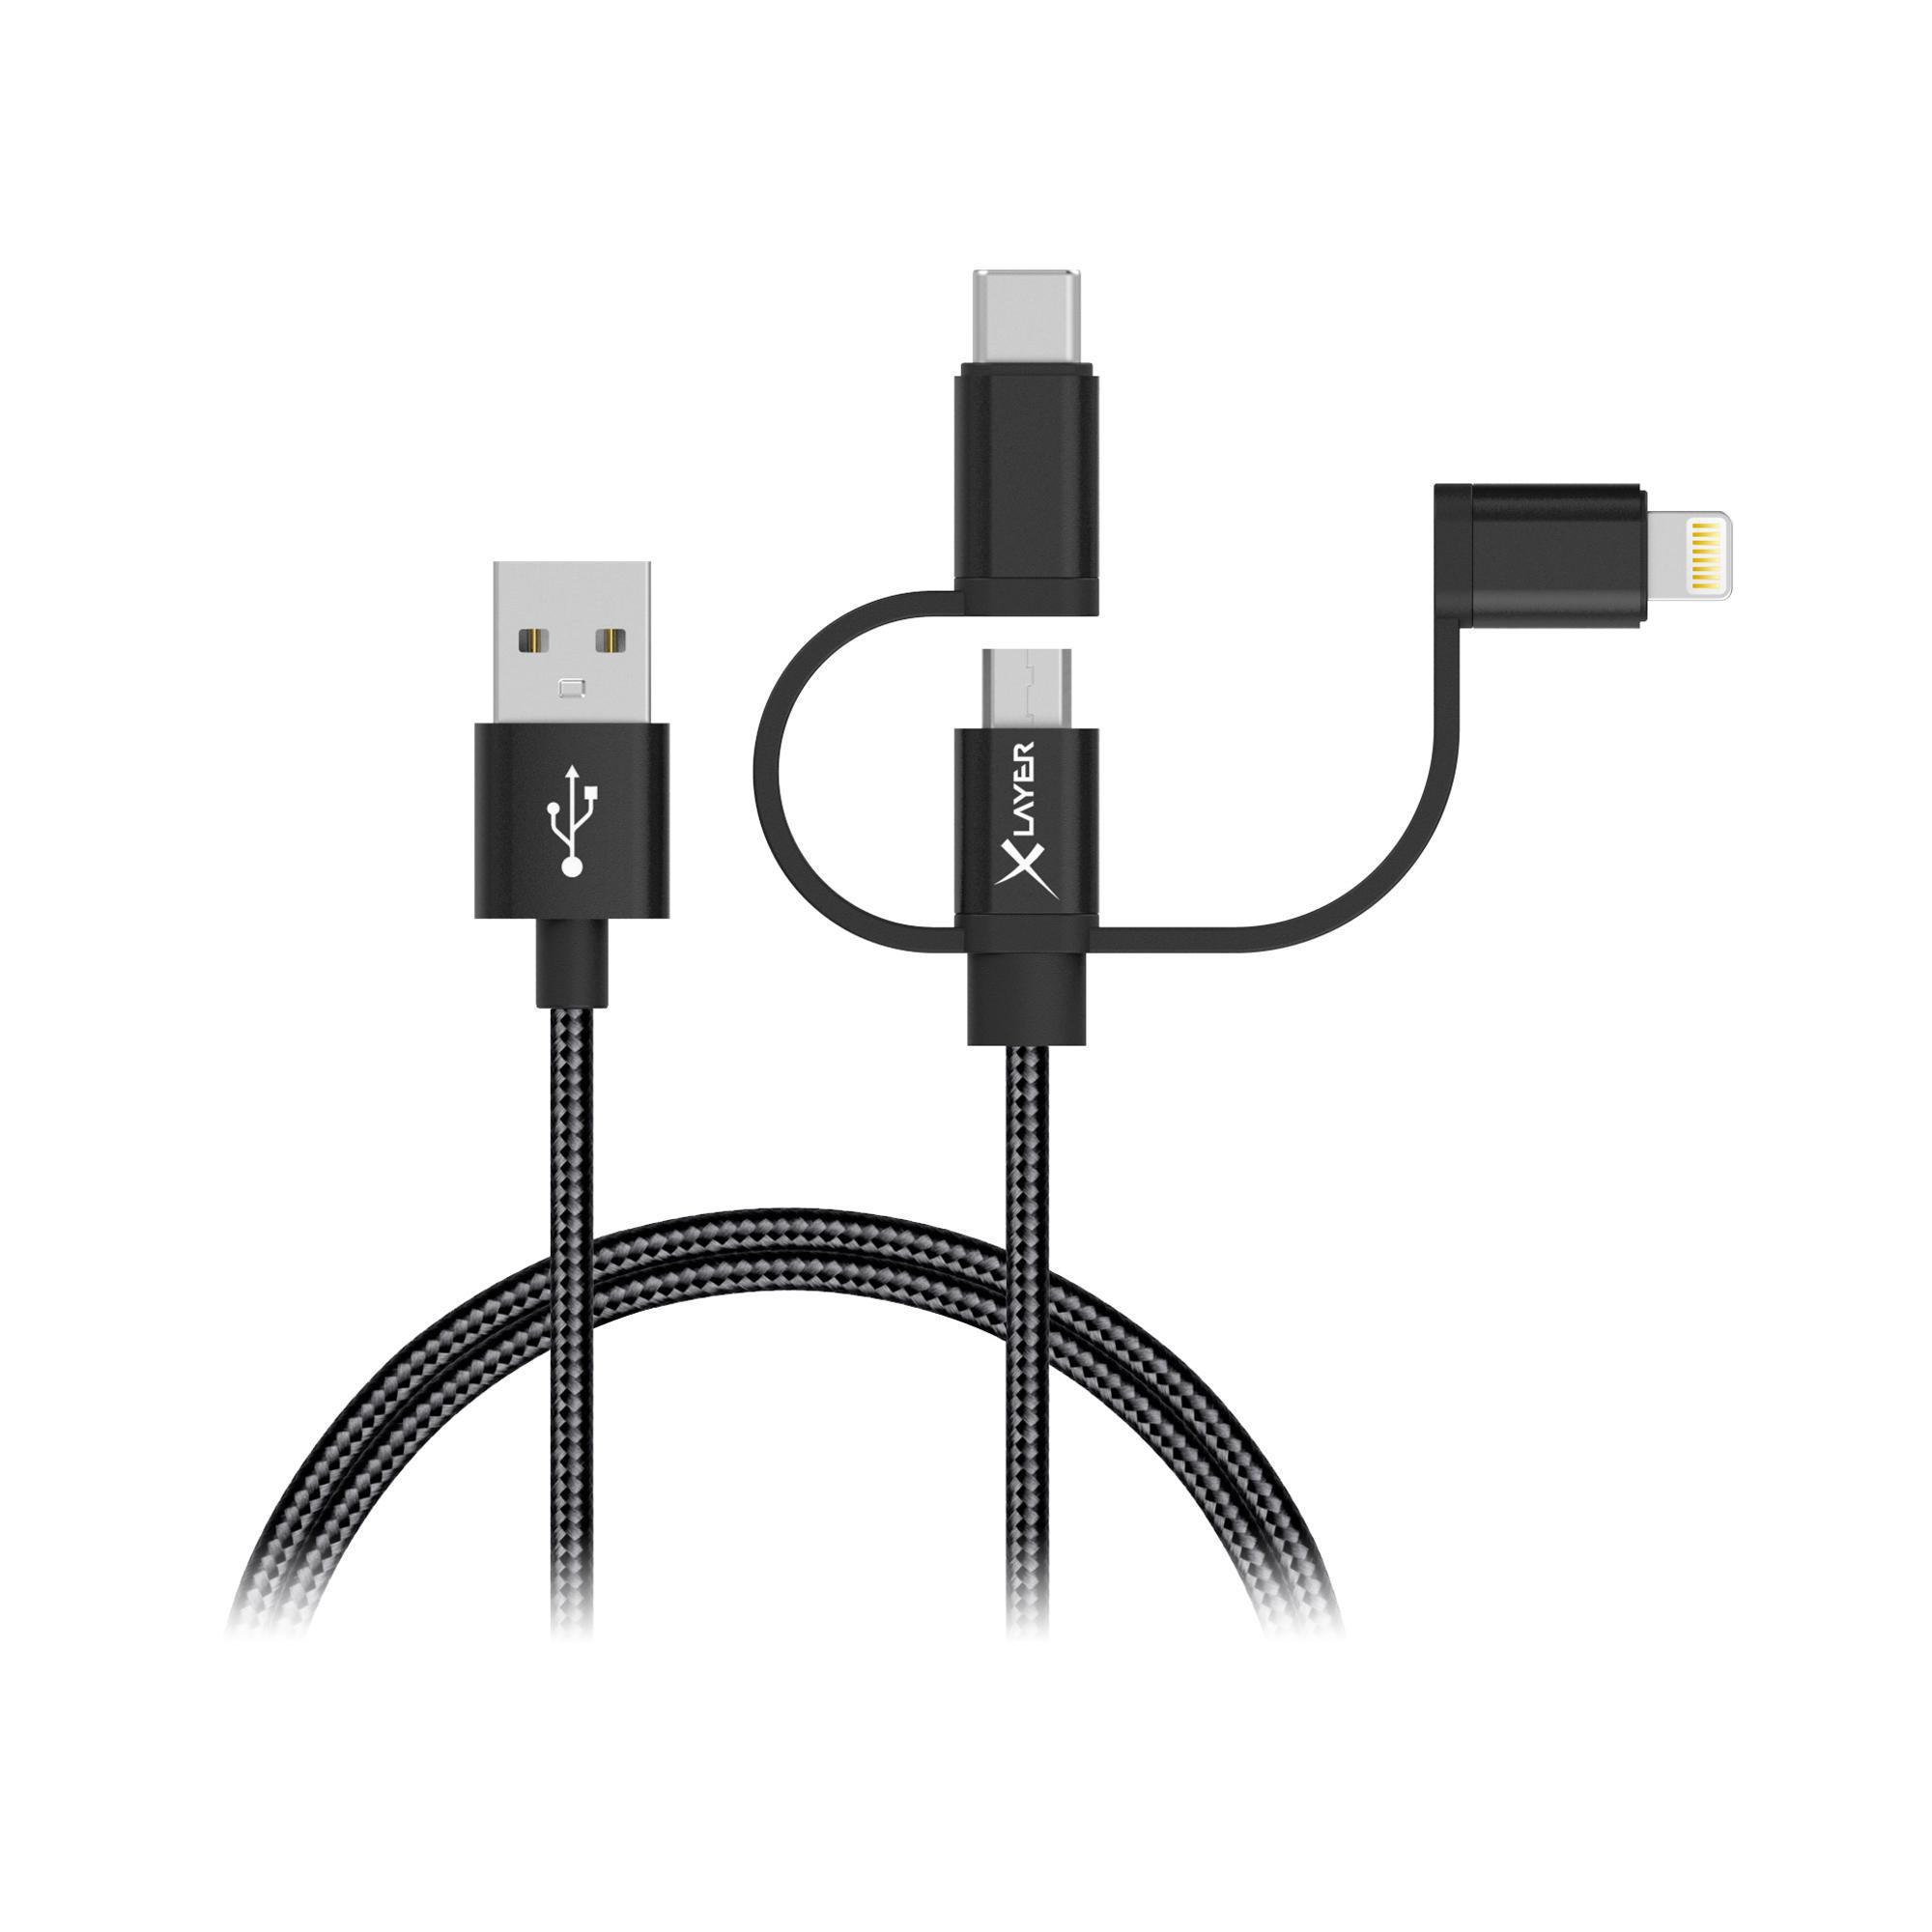 XLAYER Kabel PREMIUM Micro-USB 1 & MFI Lightning, & 3-IN-1 m, USB-C Ladekabel, Schwarz